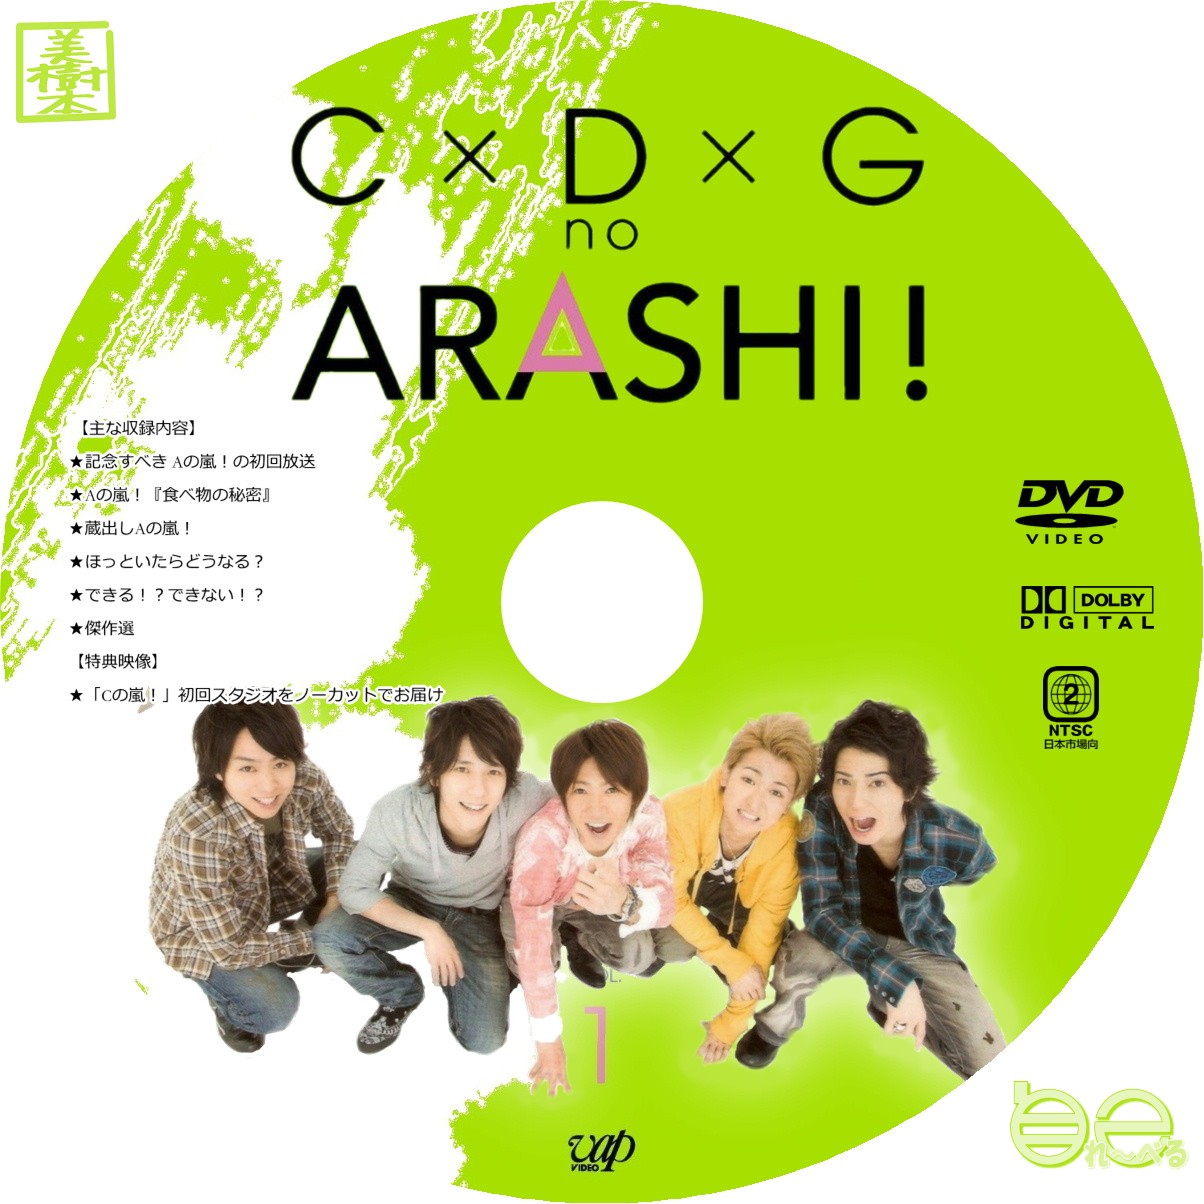 発売モデル C×D×G no ARASHI VOL.1.2 激レアチャーム付 ai-sp.co.jp